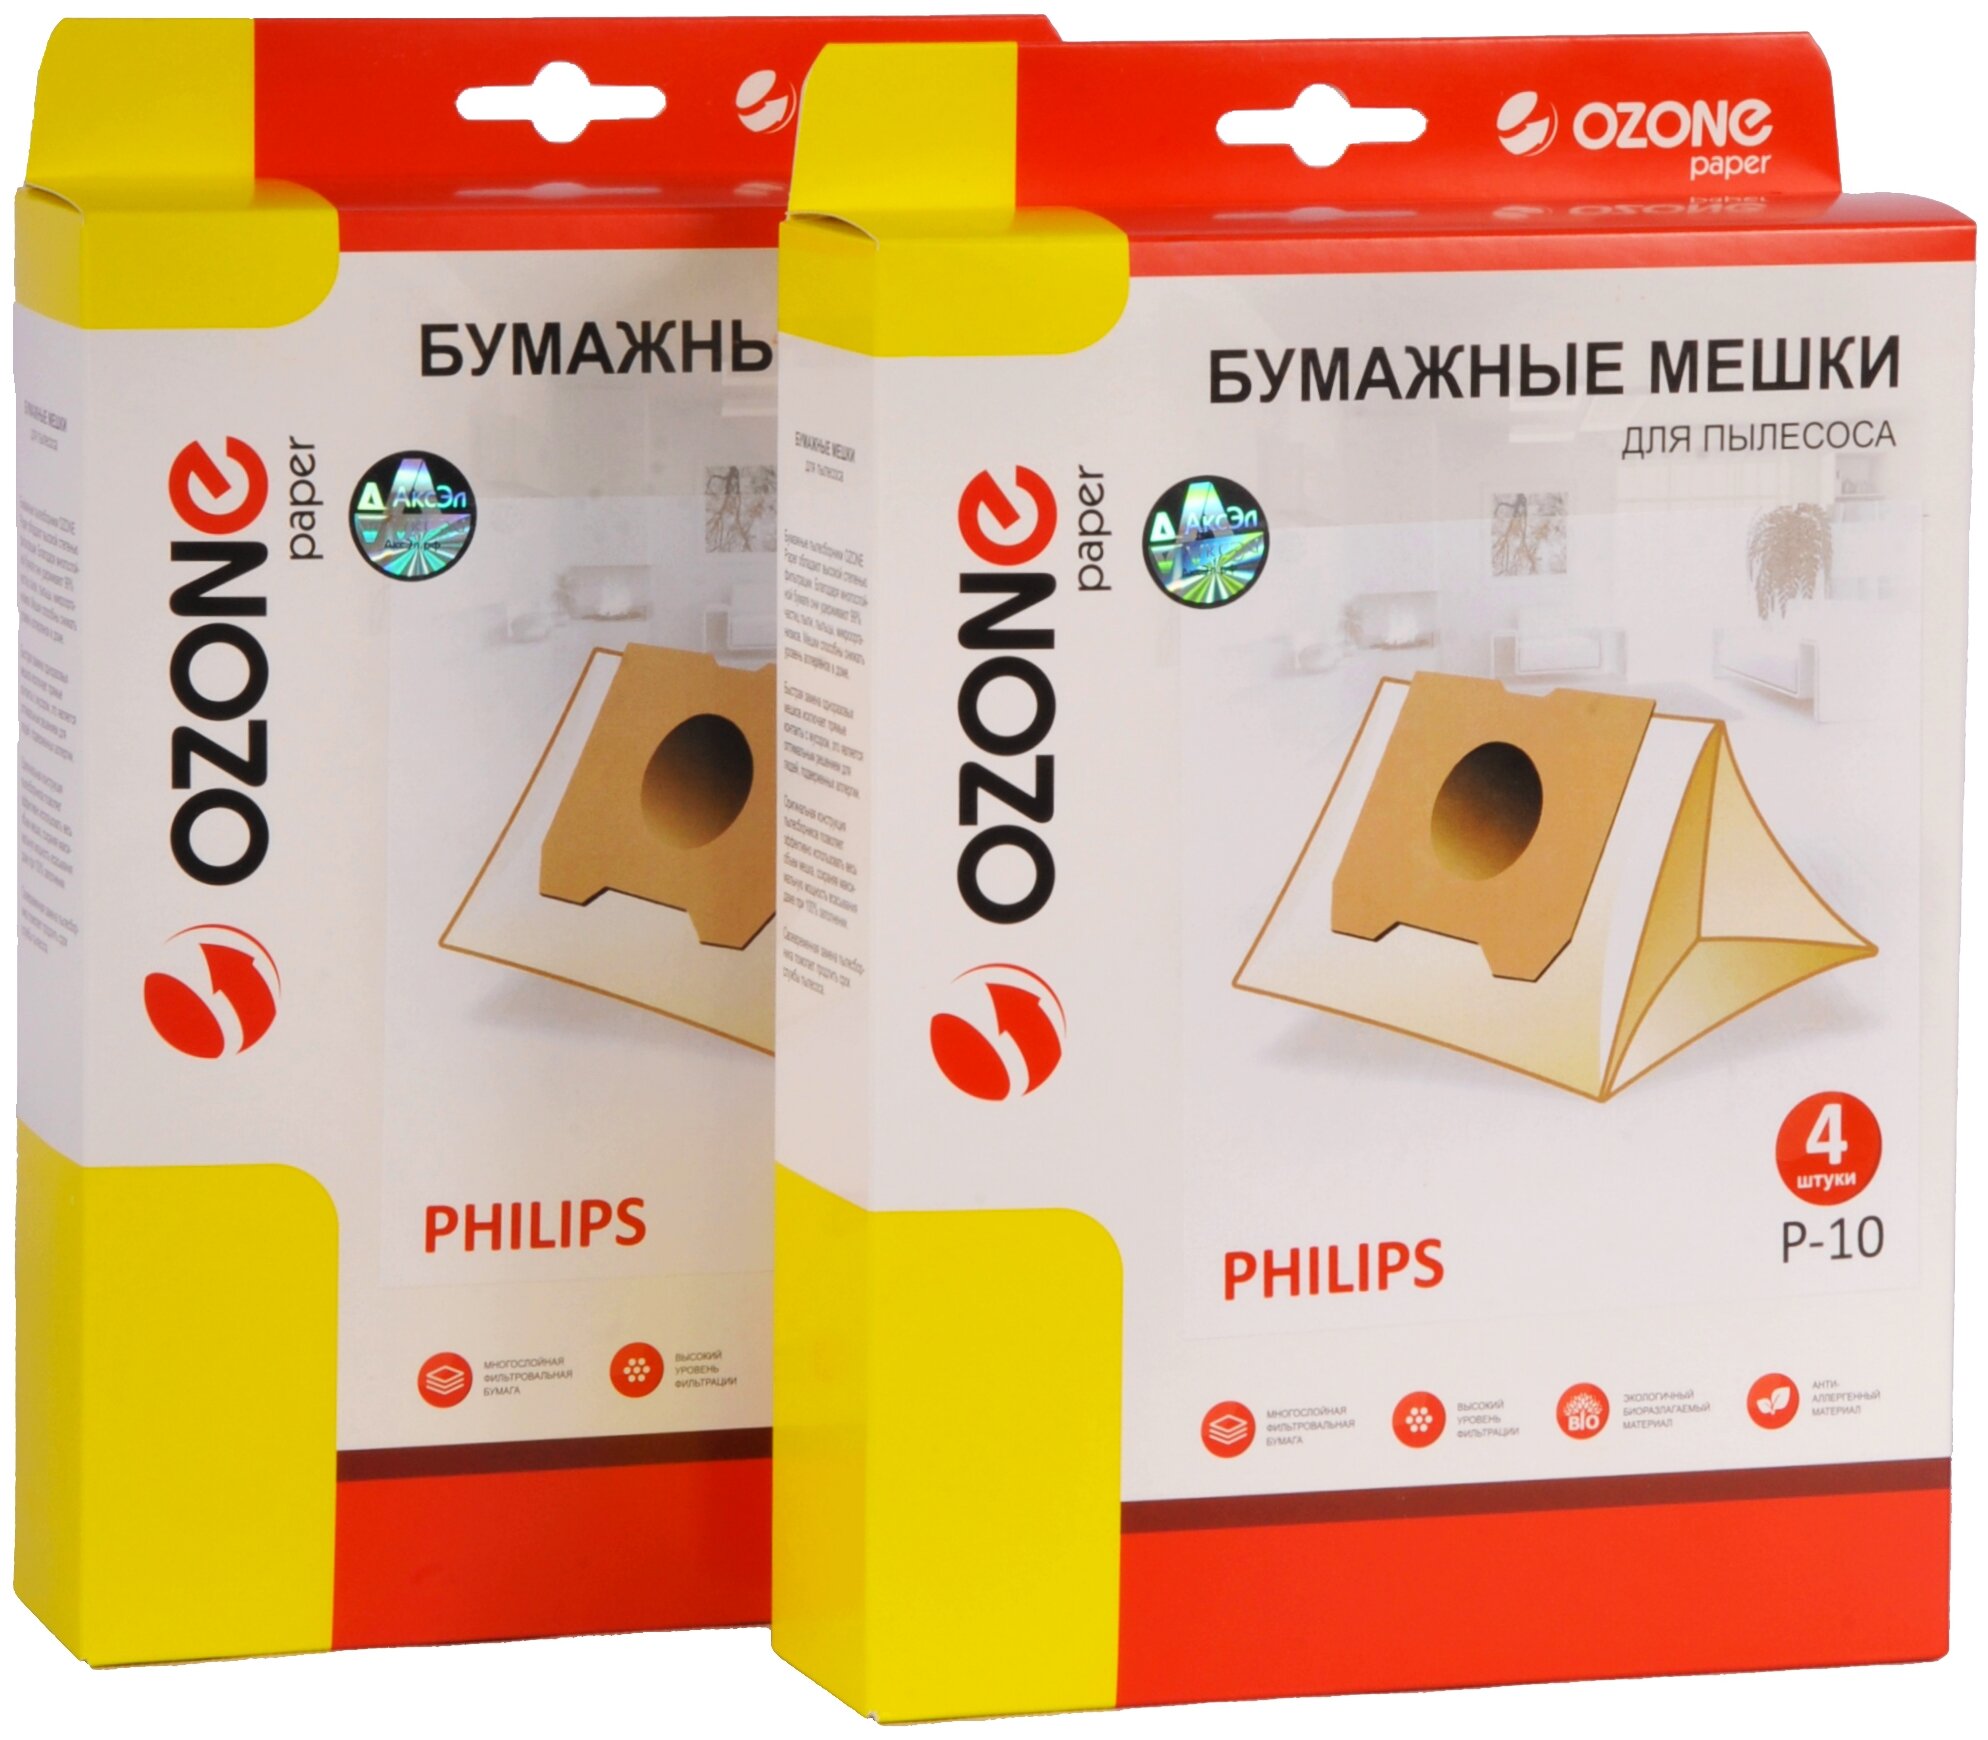 Мешки пылесборники Ozone P-10/2 для пылесоса PHILIPS, 2 упаковки по 4 шт.